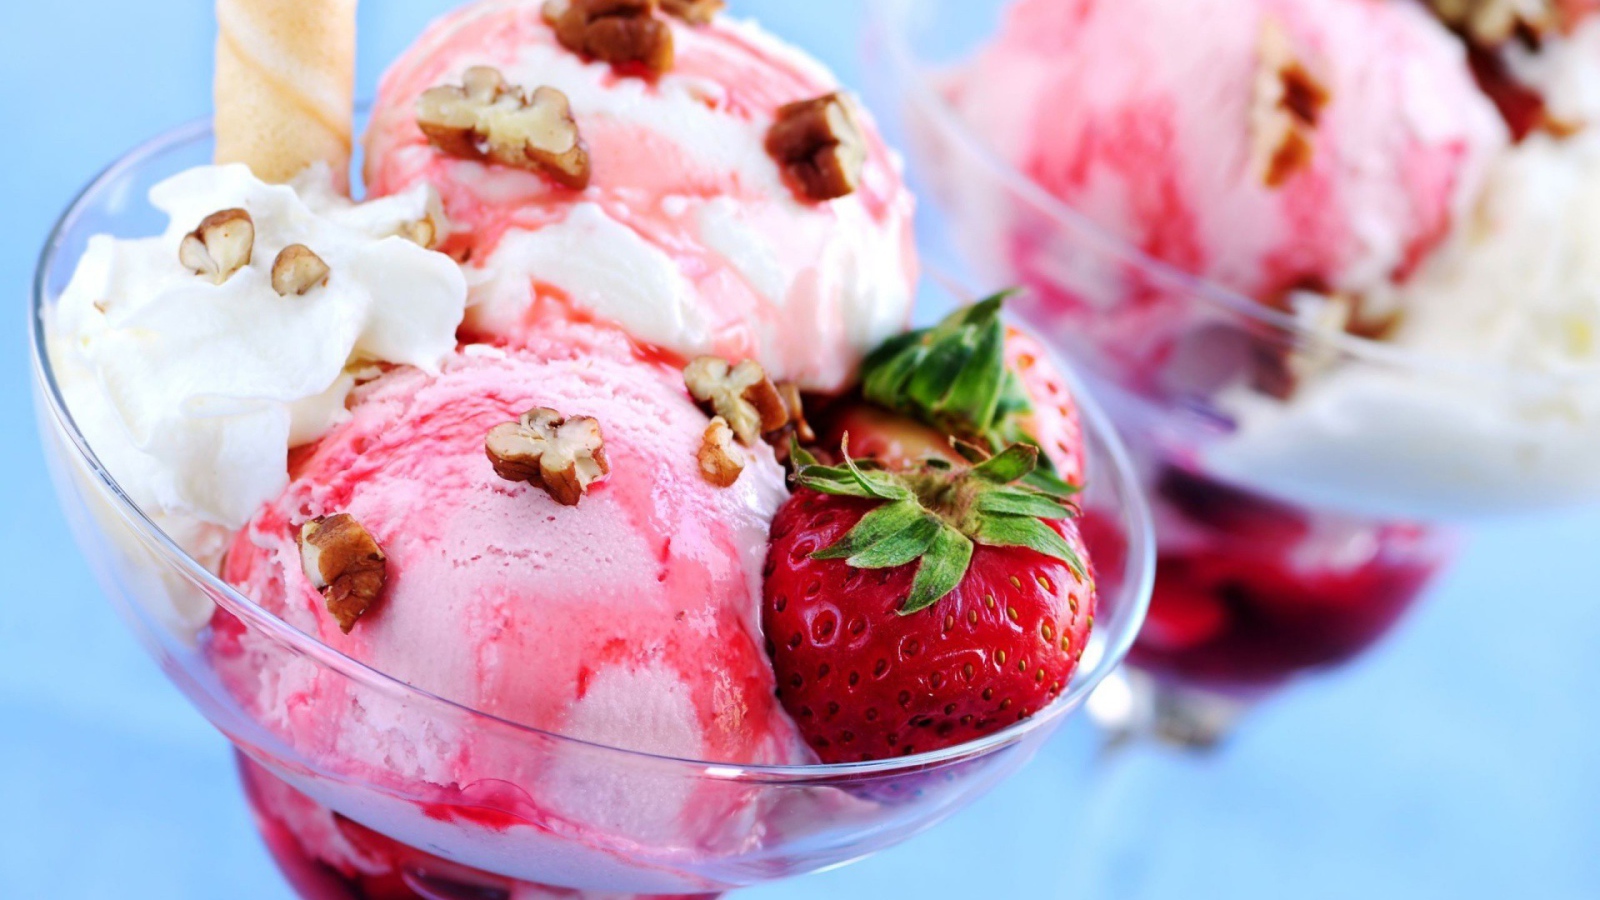 Клубничное мороженое с орехами и ягодами